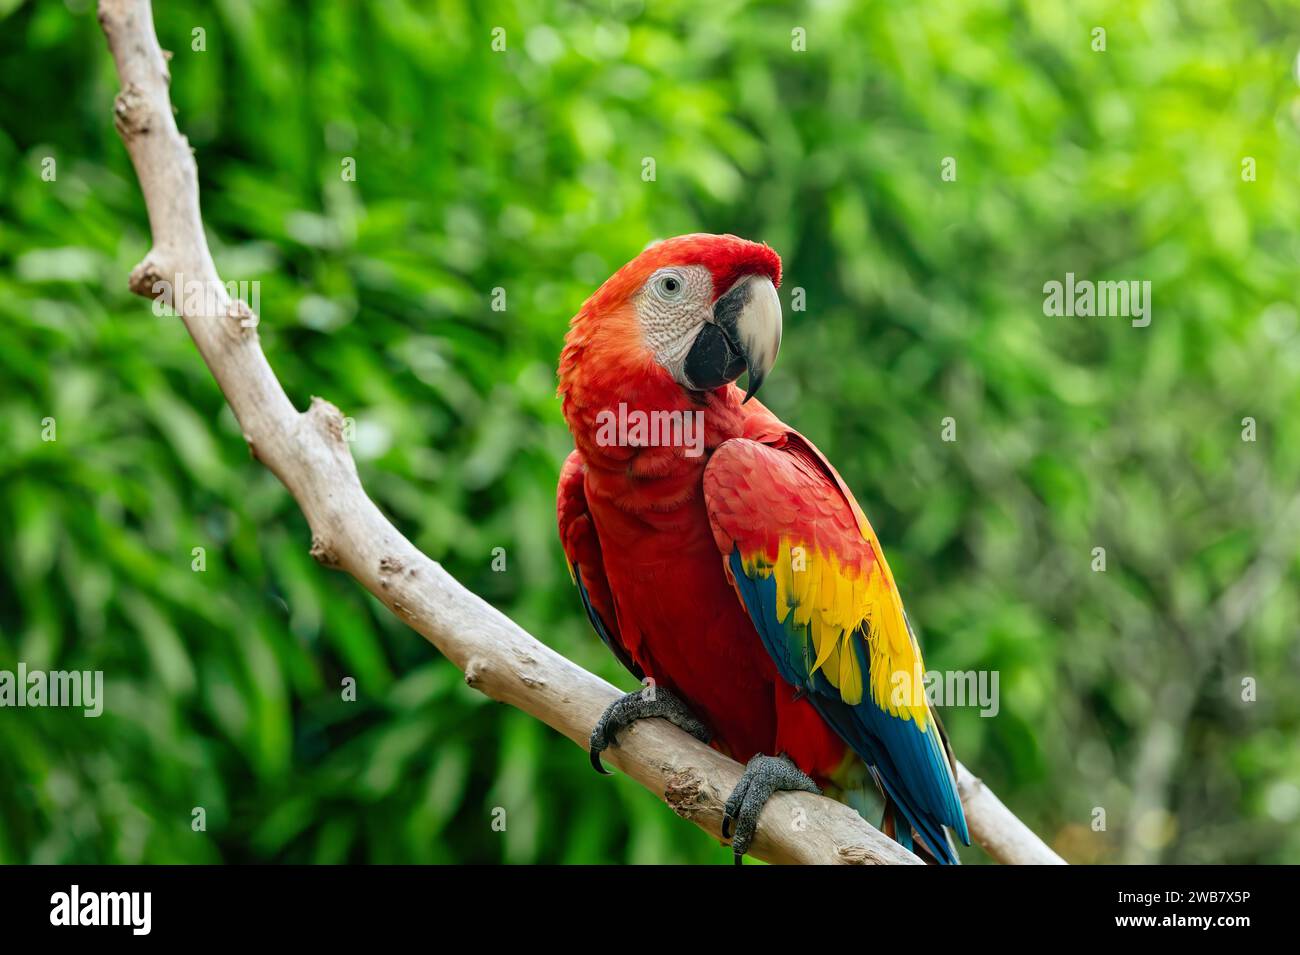 Ara macao (Ara macao) ist ein großer gelber, roter und blauer neotropischer Papagei, der in feuchten immergrünen Wäldern Amerikas beheimatet ist. Malagana, Bolivar depa Stockfoto